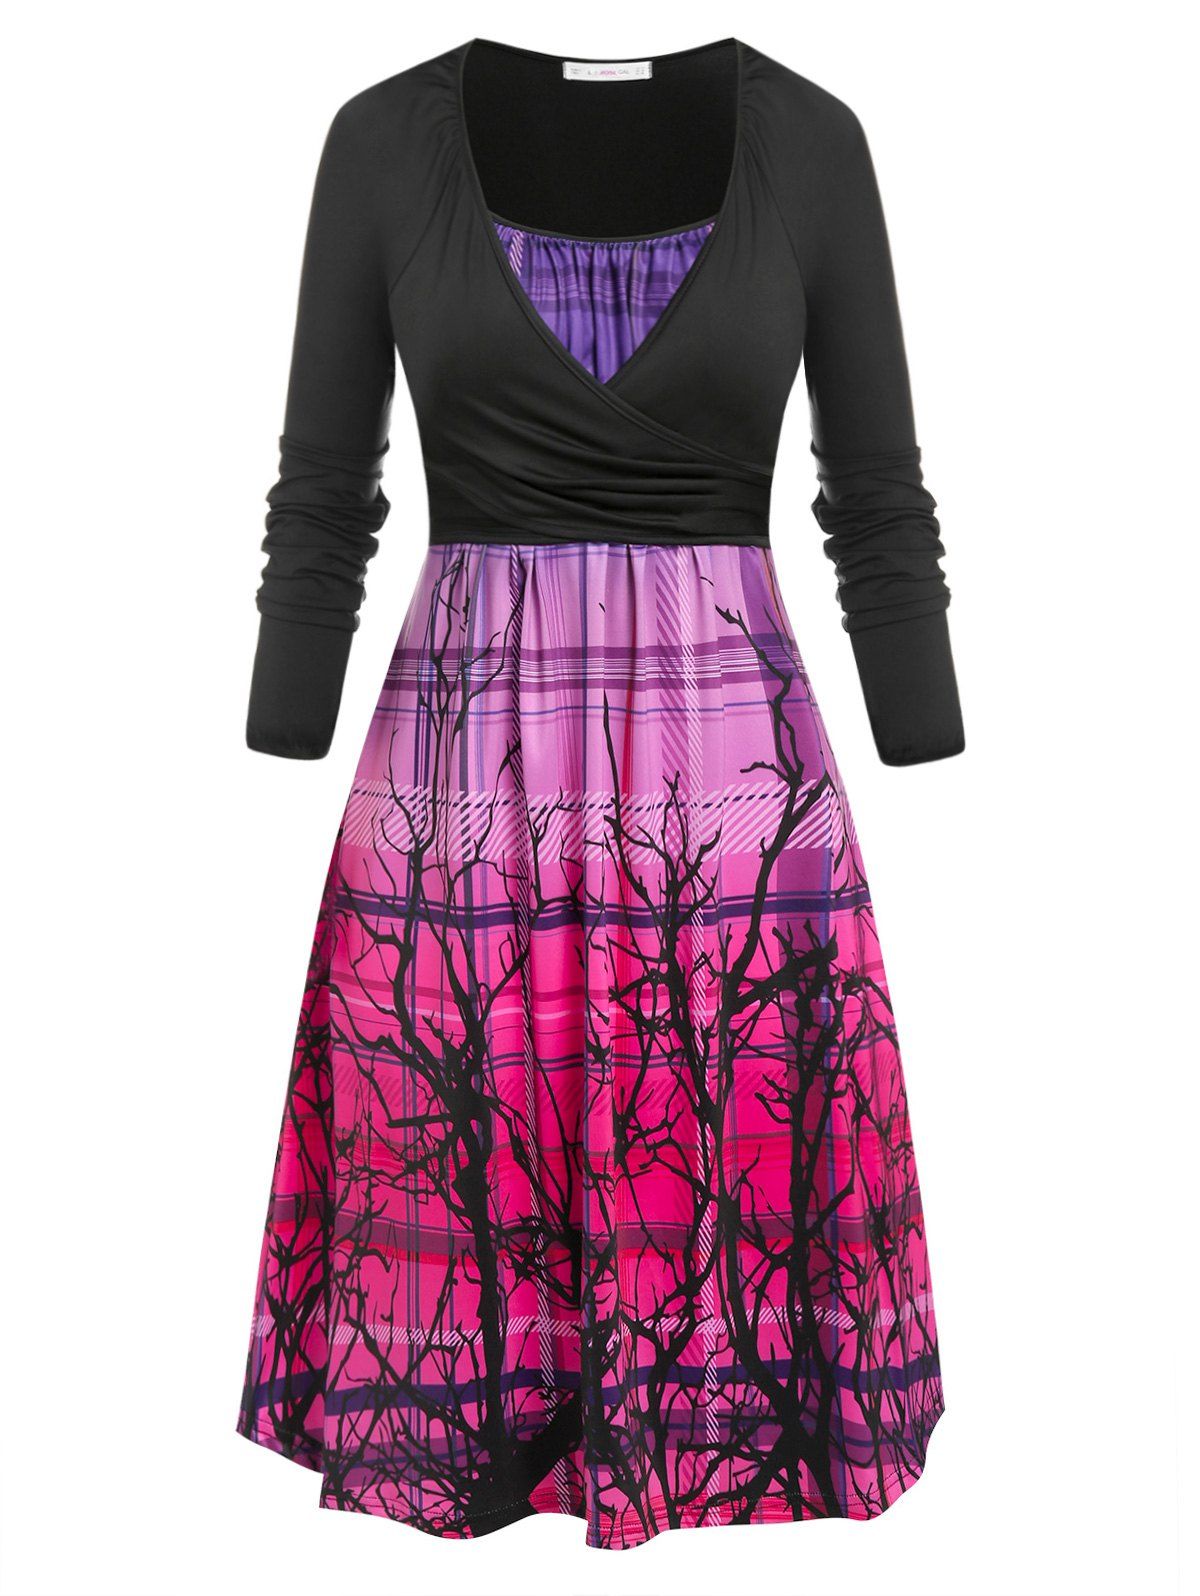 Plus Size Ombre Plaid Branch Print Cami Dress with Wrap T Shirt - multicolor 5X